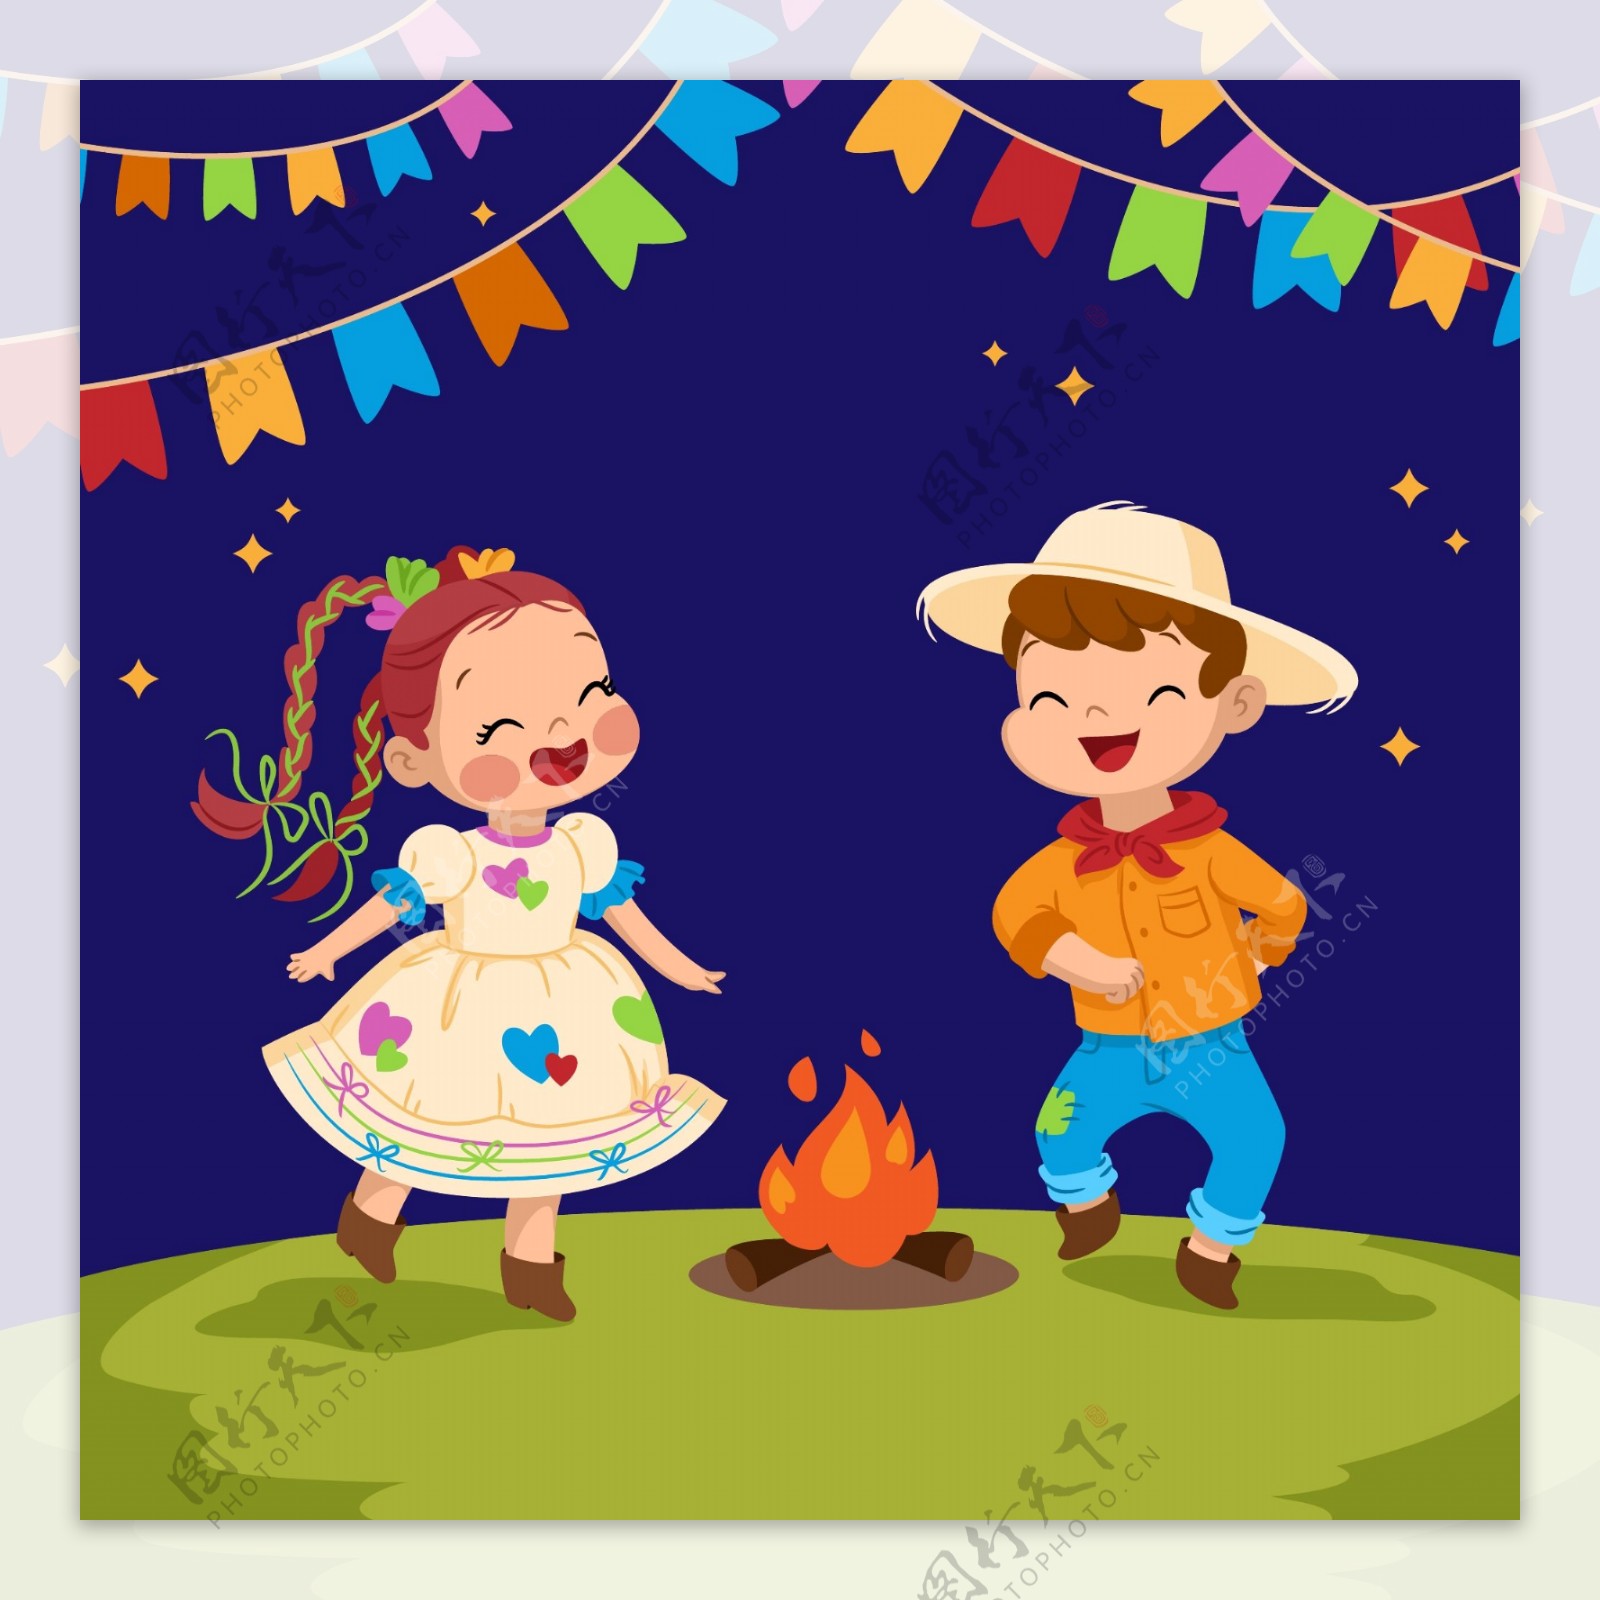 孩子们在篝火边上跳舞